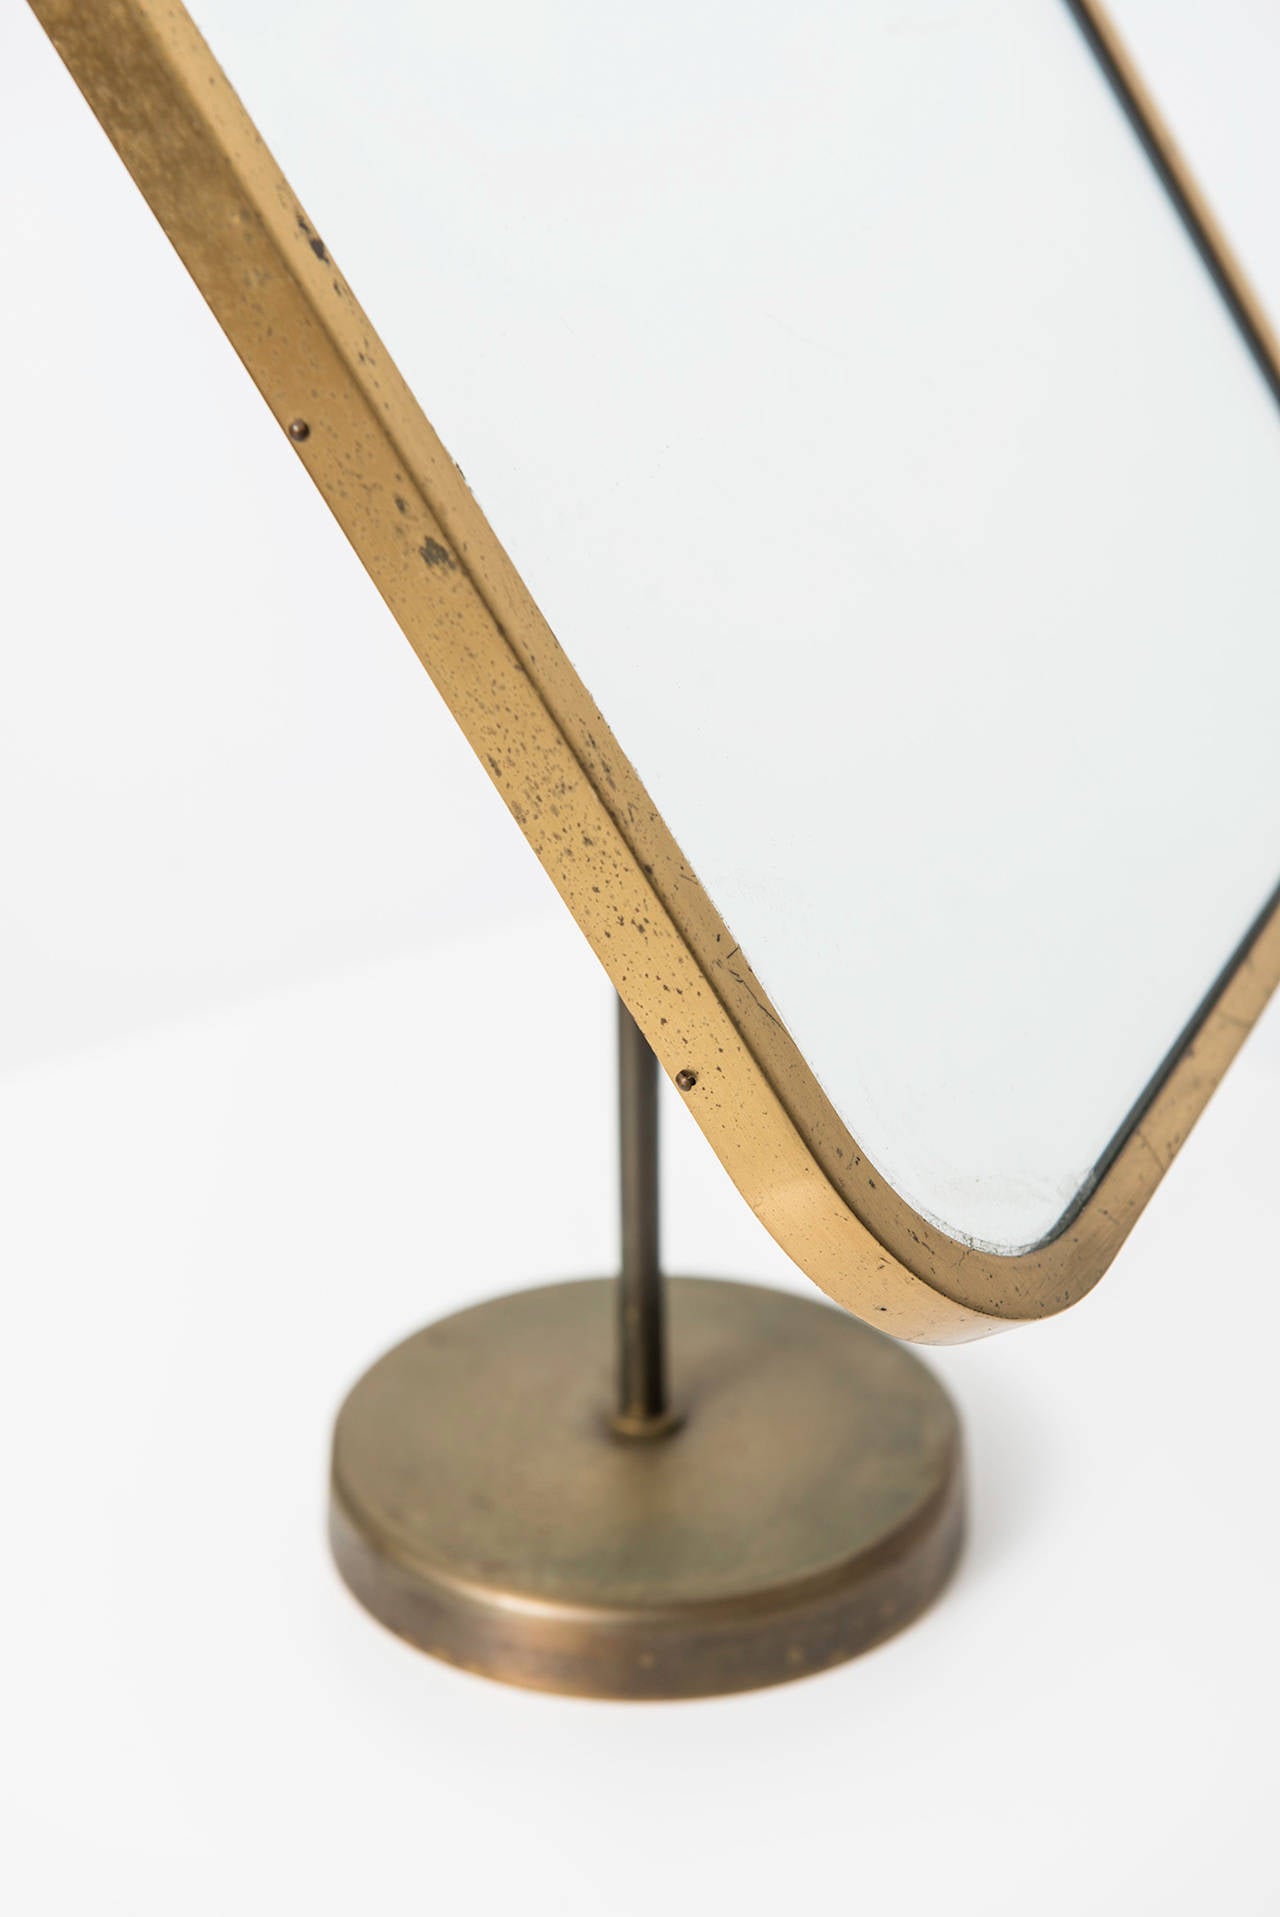 Josef Frank Table Mirror in Brass by Nordiska Kompaniet in Sweden In Excellent Condition In Limhamn, Skåne län